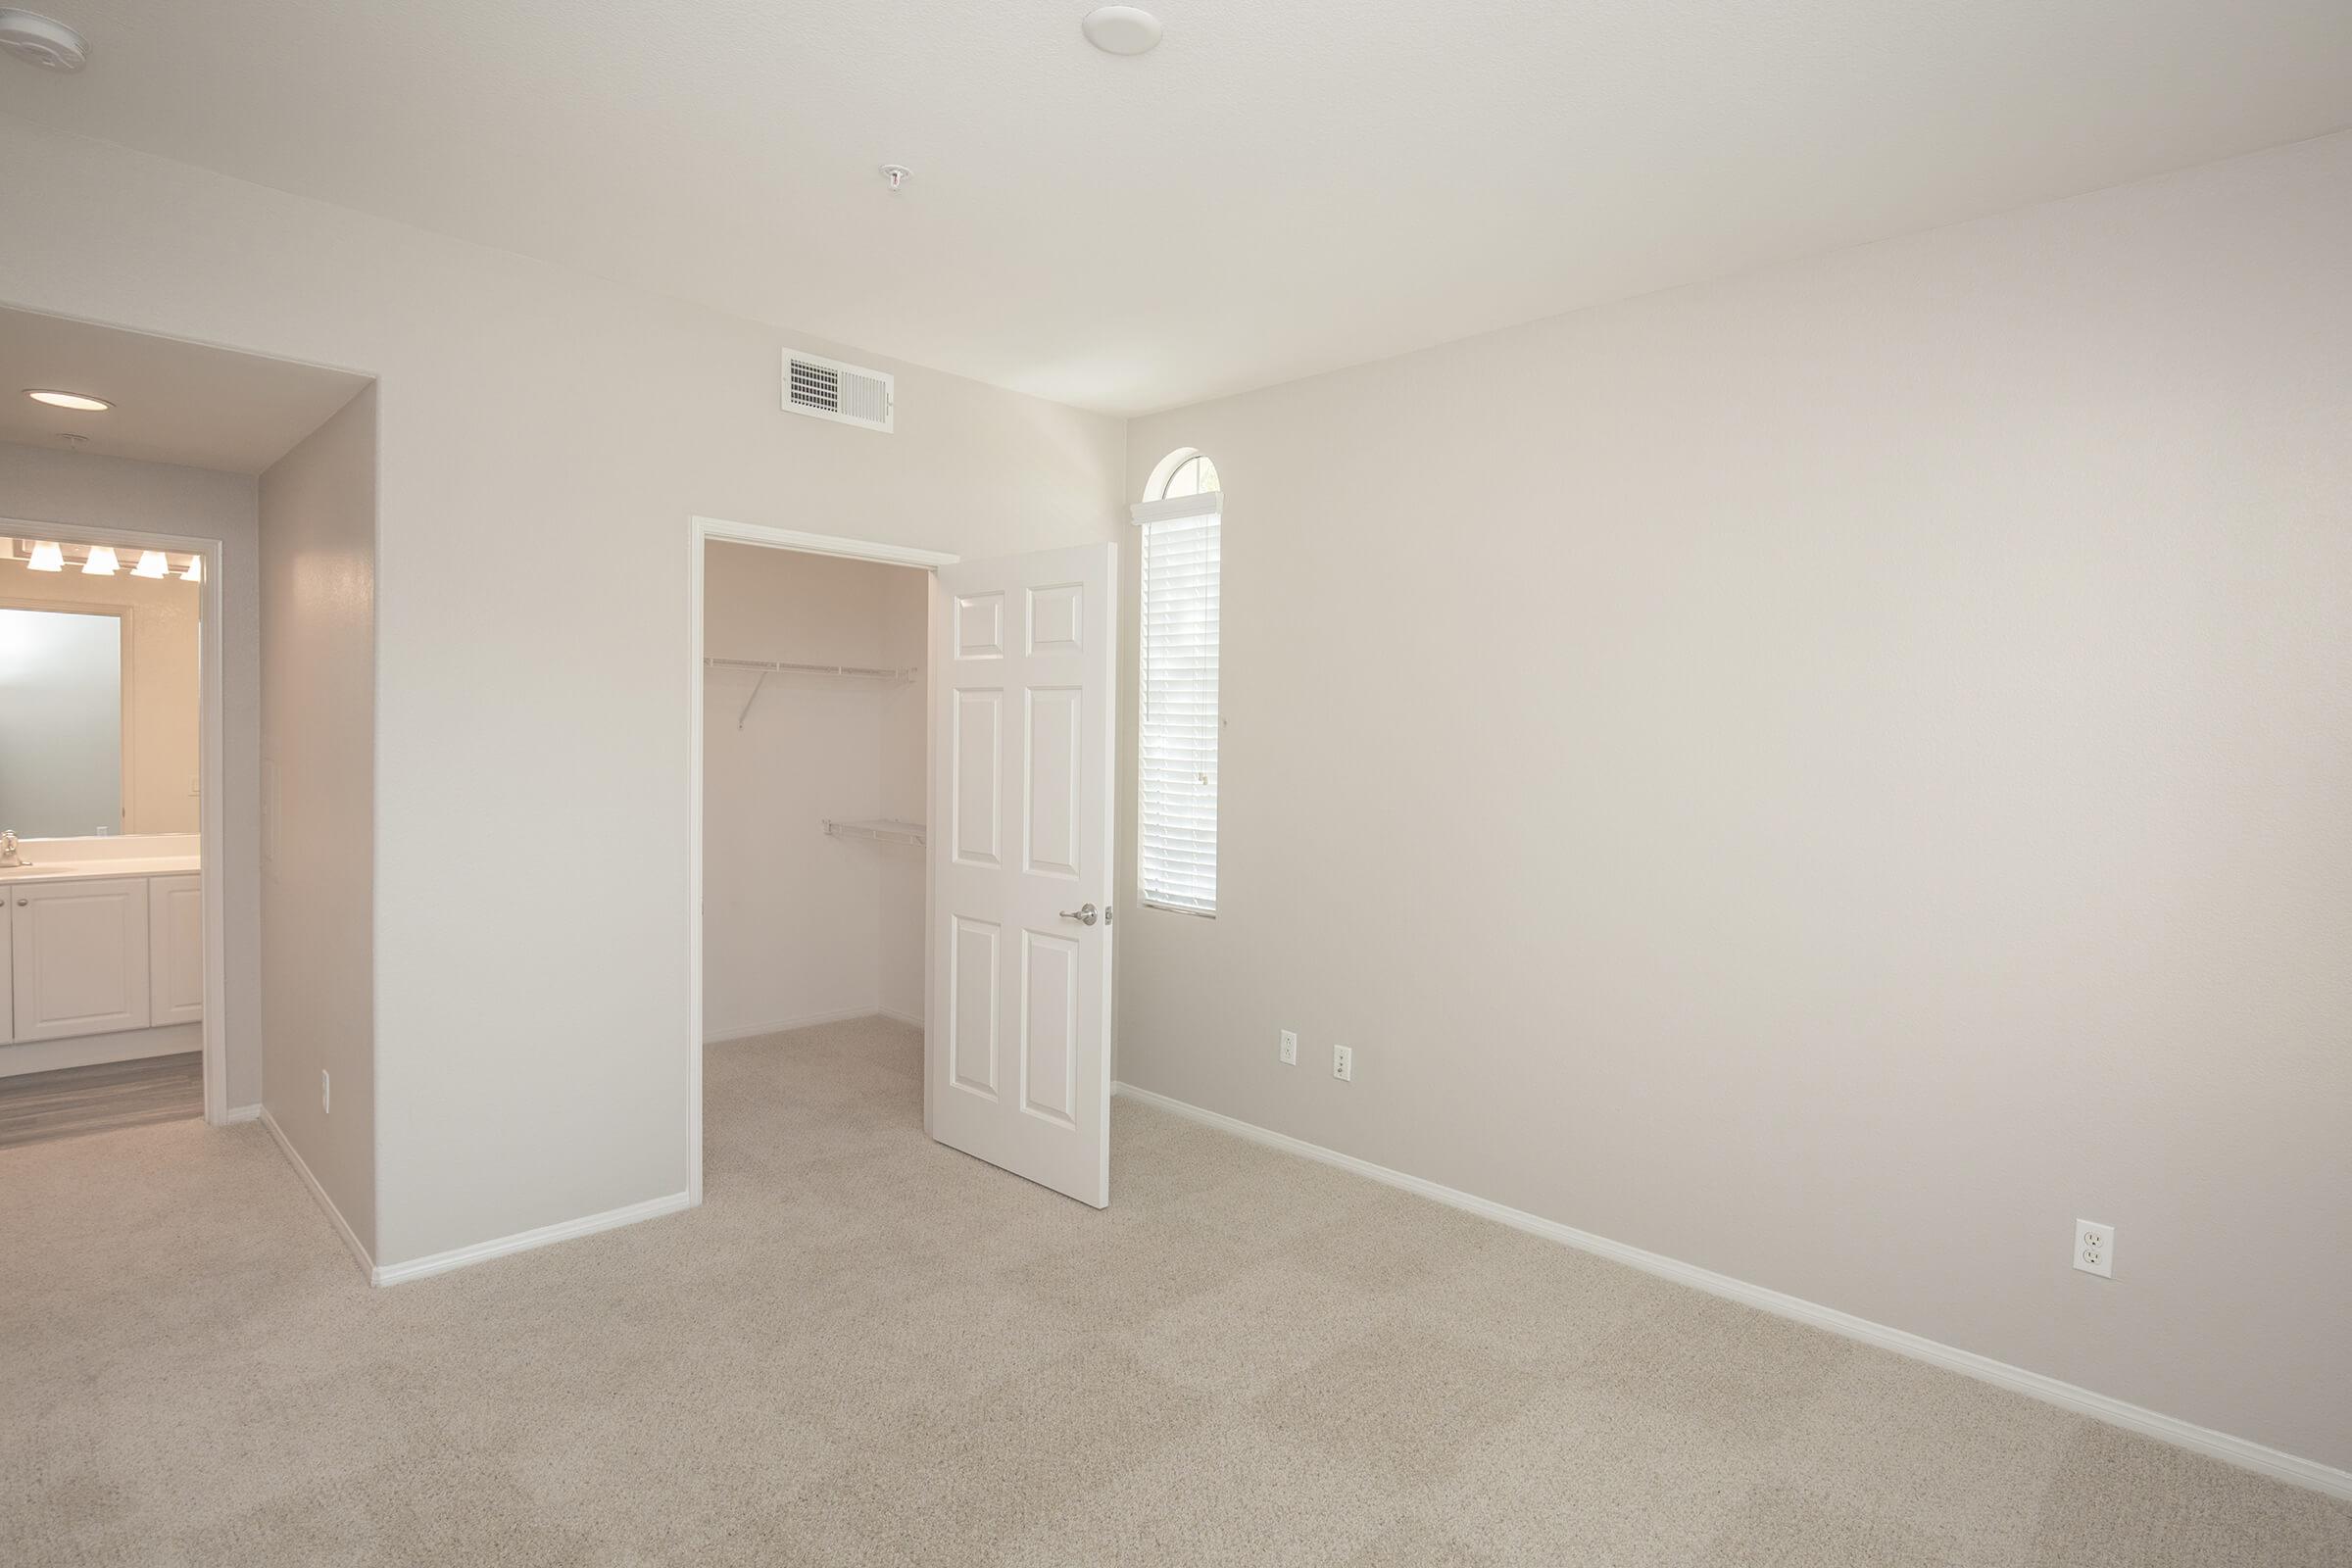 Carpeted bedroom with open walk-in closet door